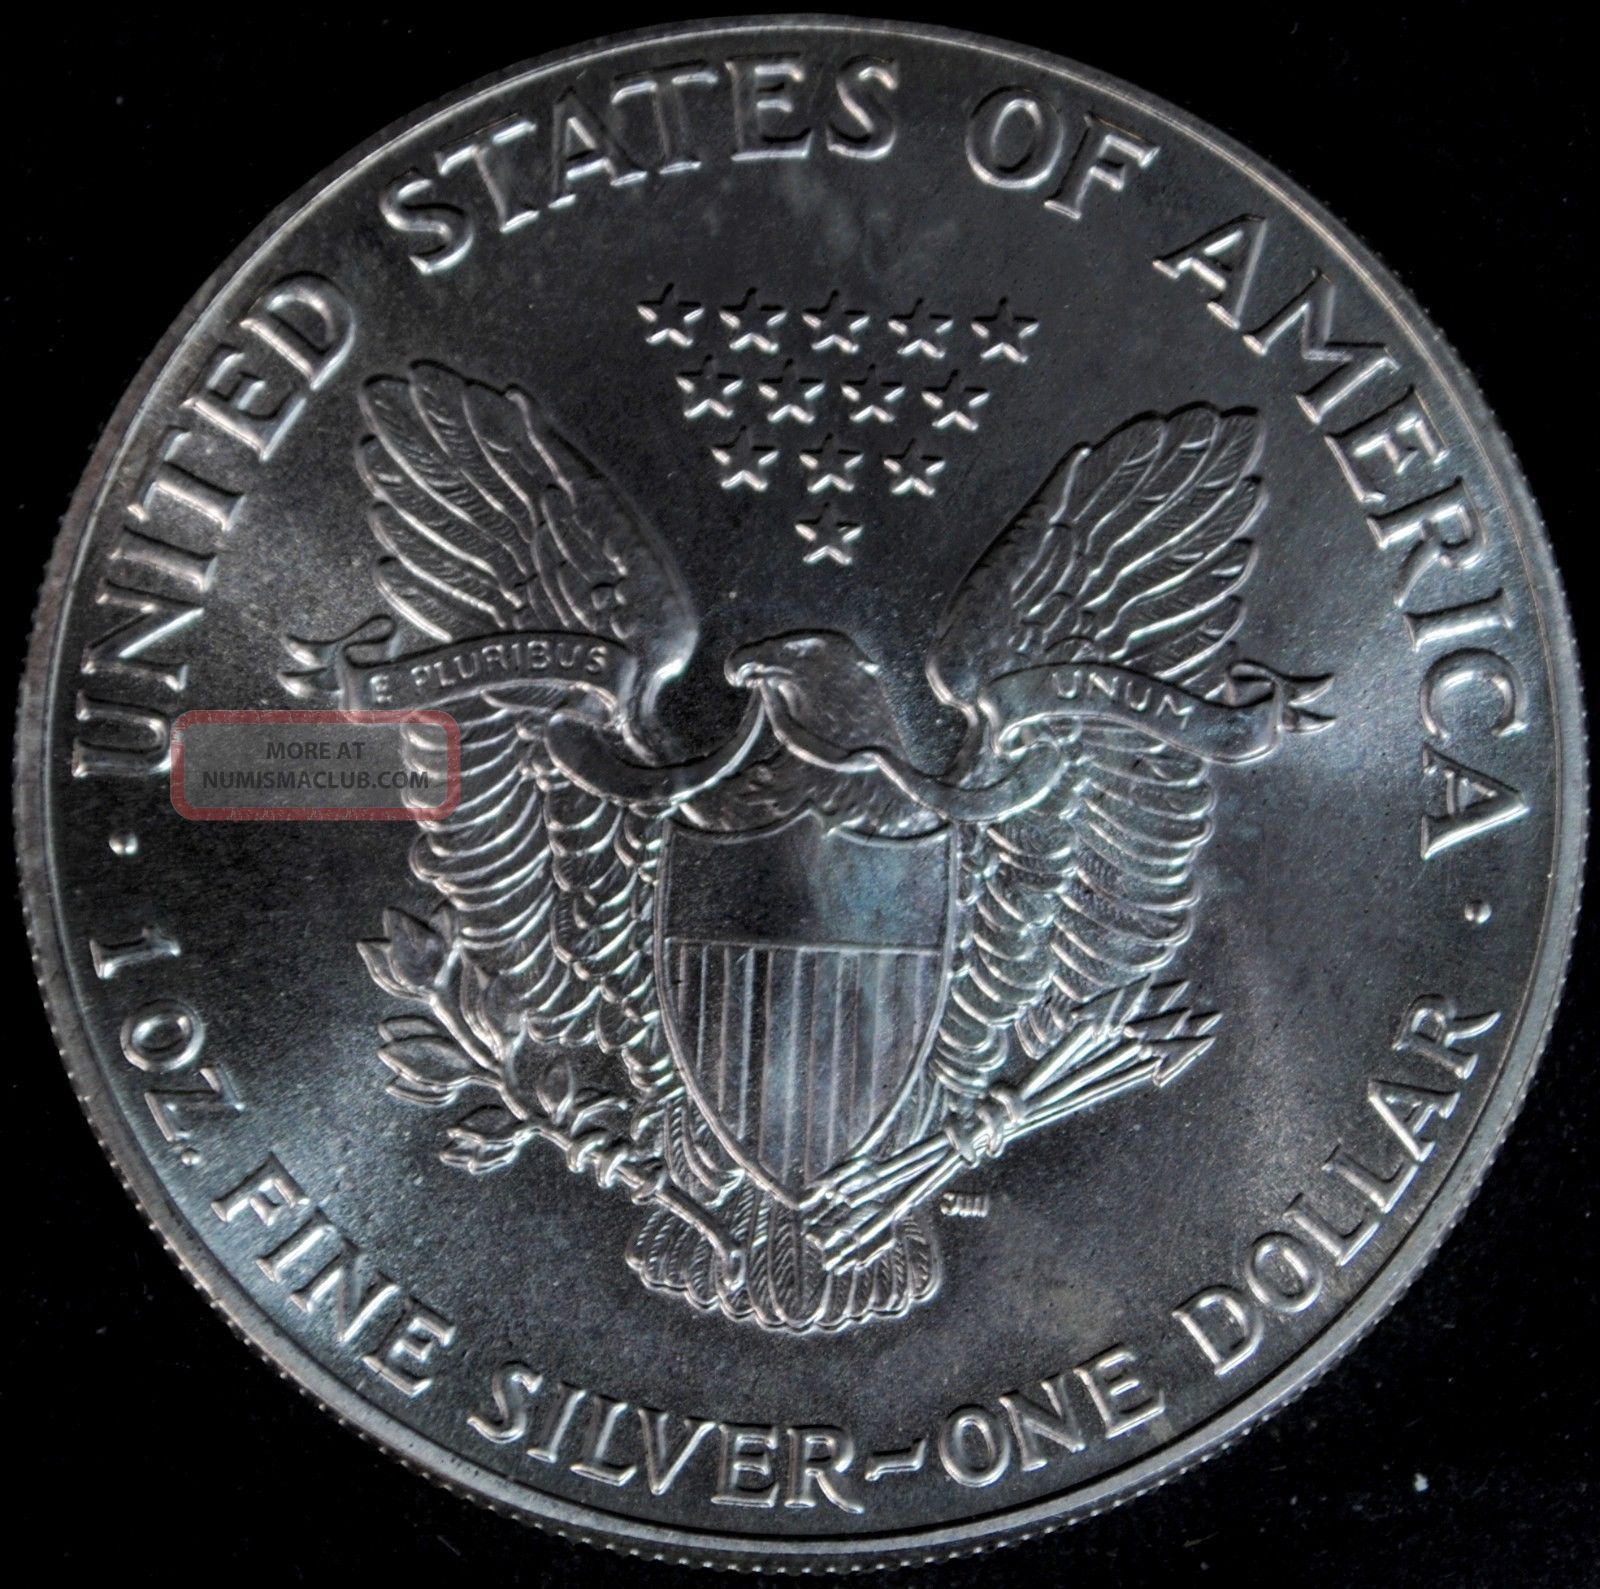 1986 Silver American Eagle 1 One Dollar Coin 1 Troy Oz. Fine Silver